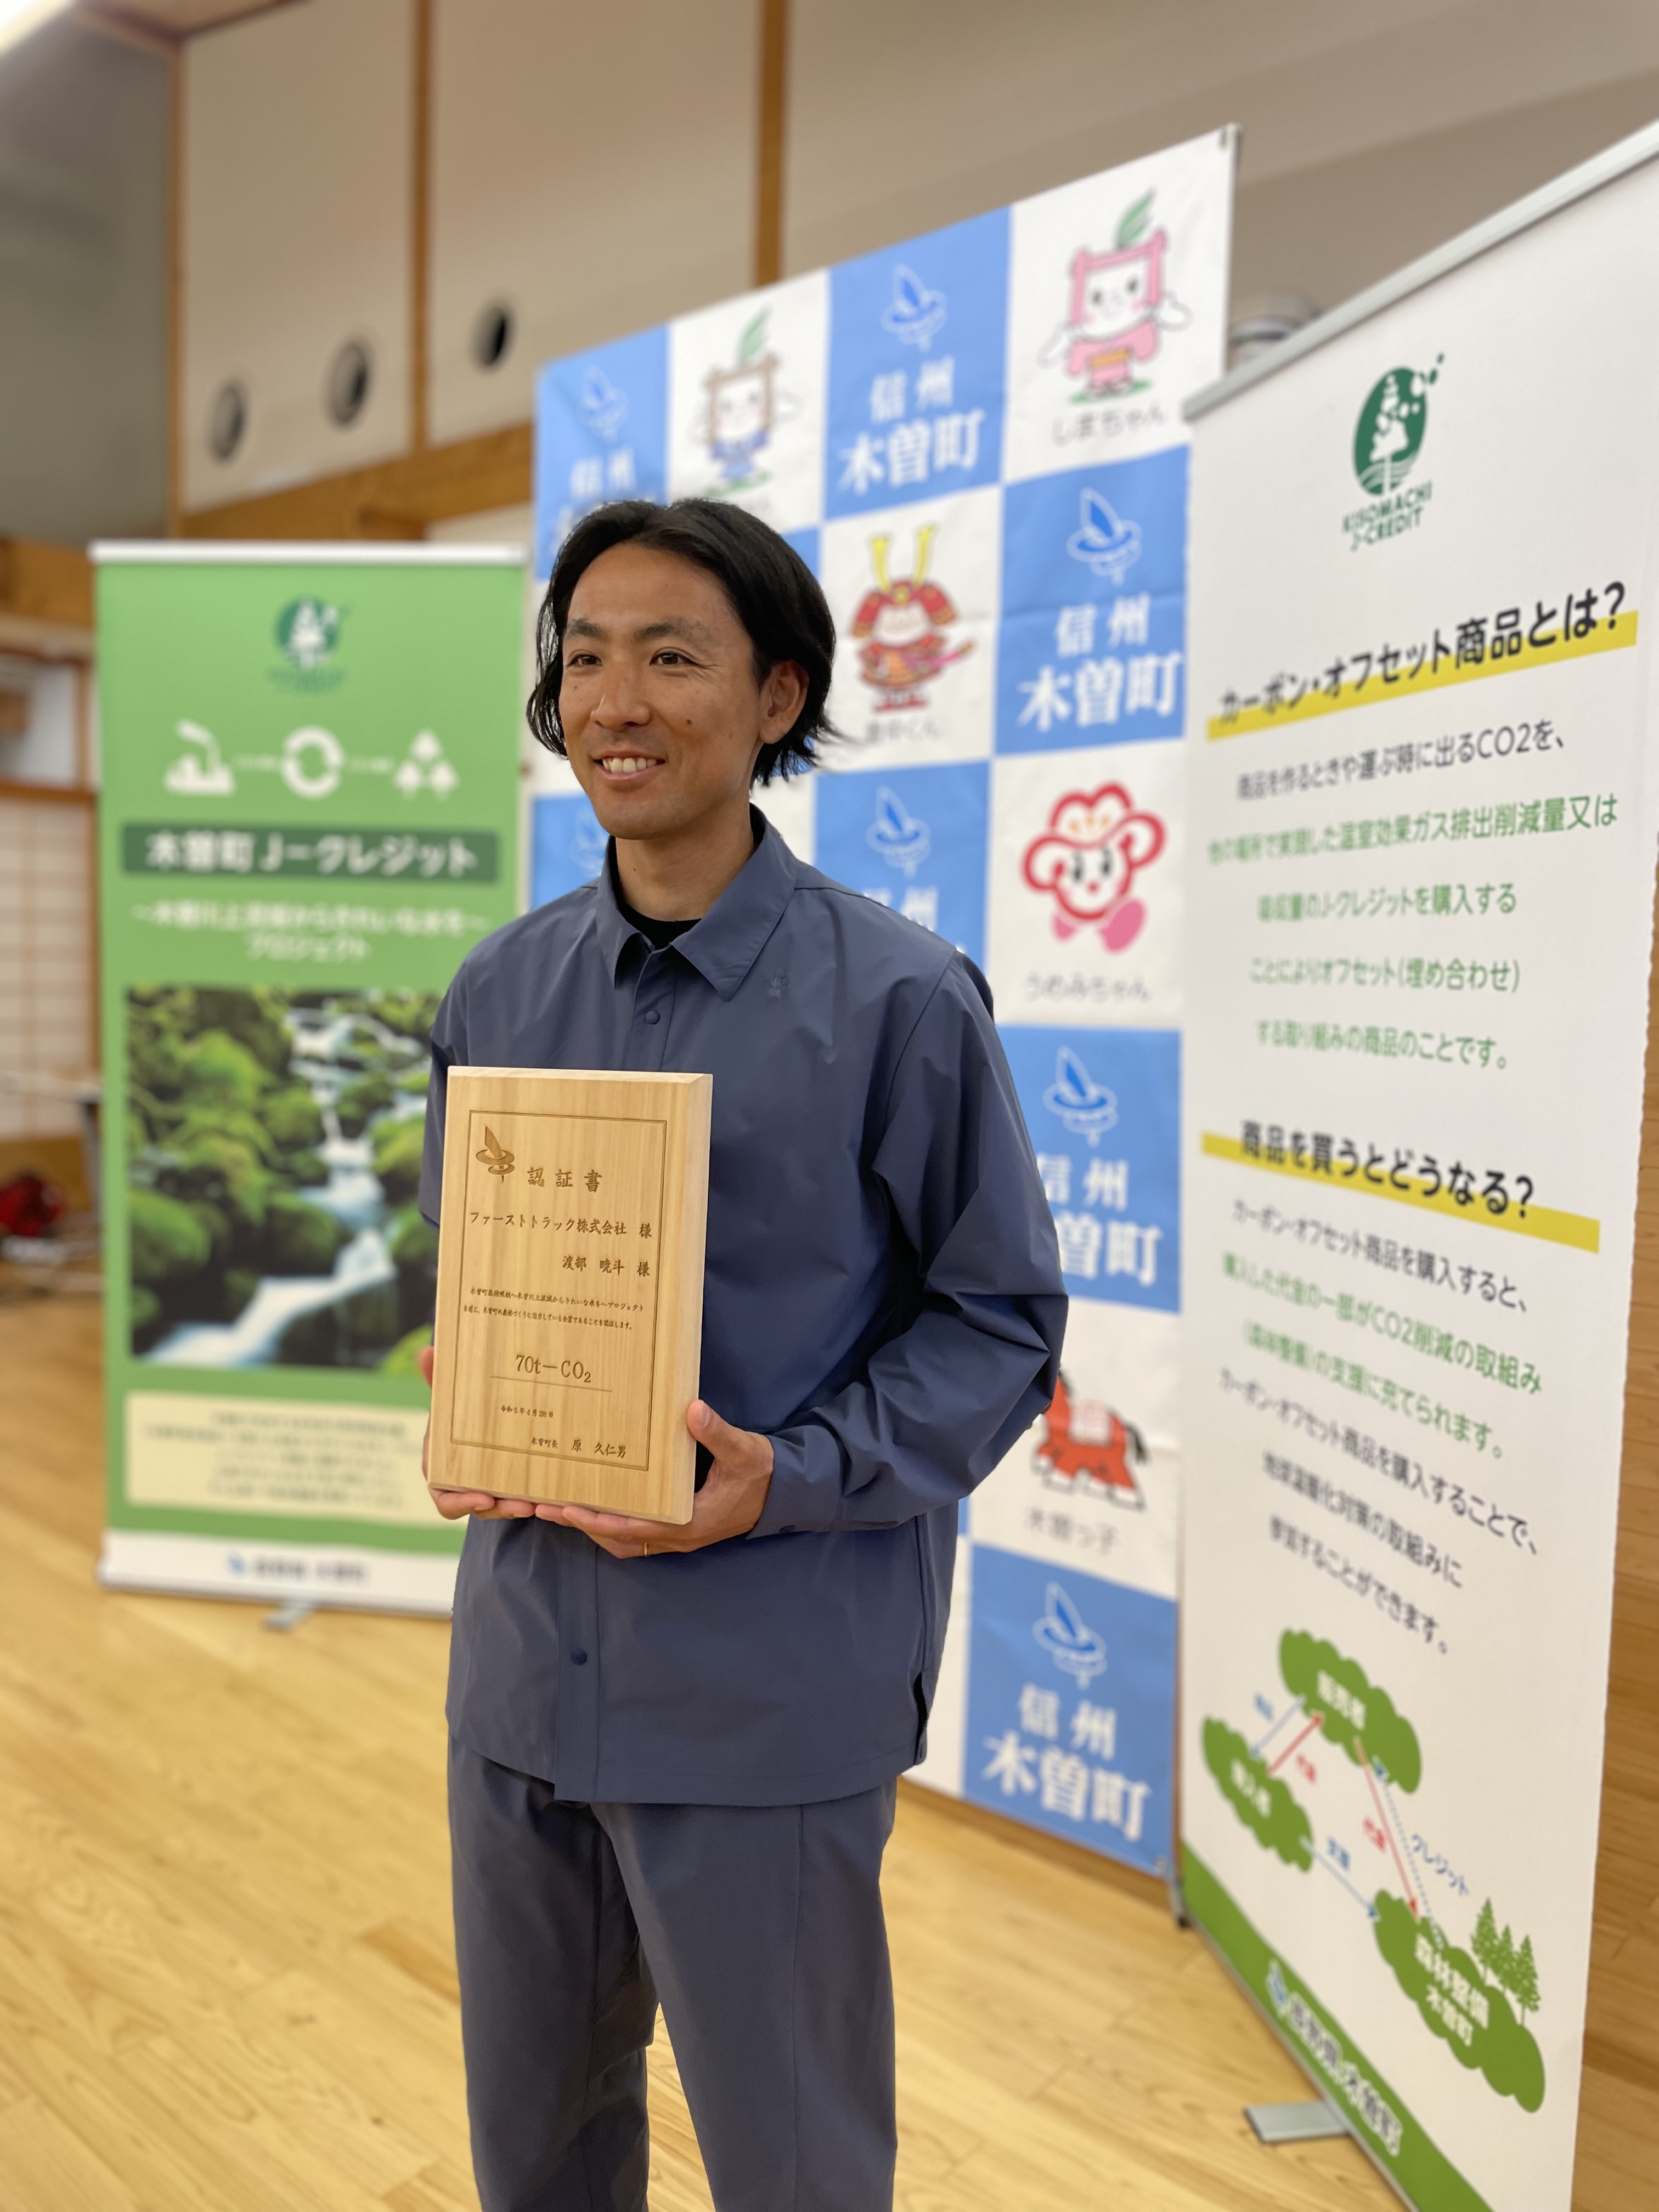 渡部暁斗が木曽町で森林クレジットの贈呈式と記念植樹に出席